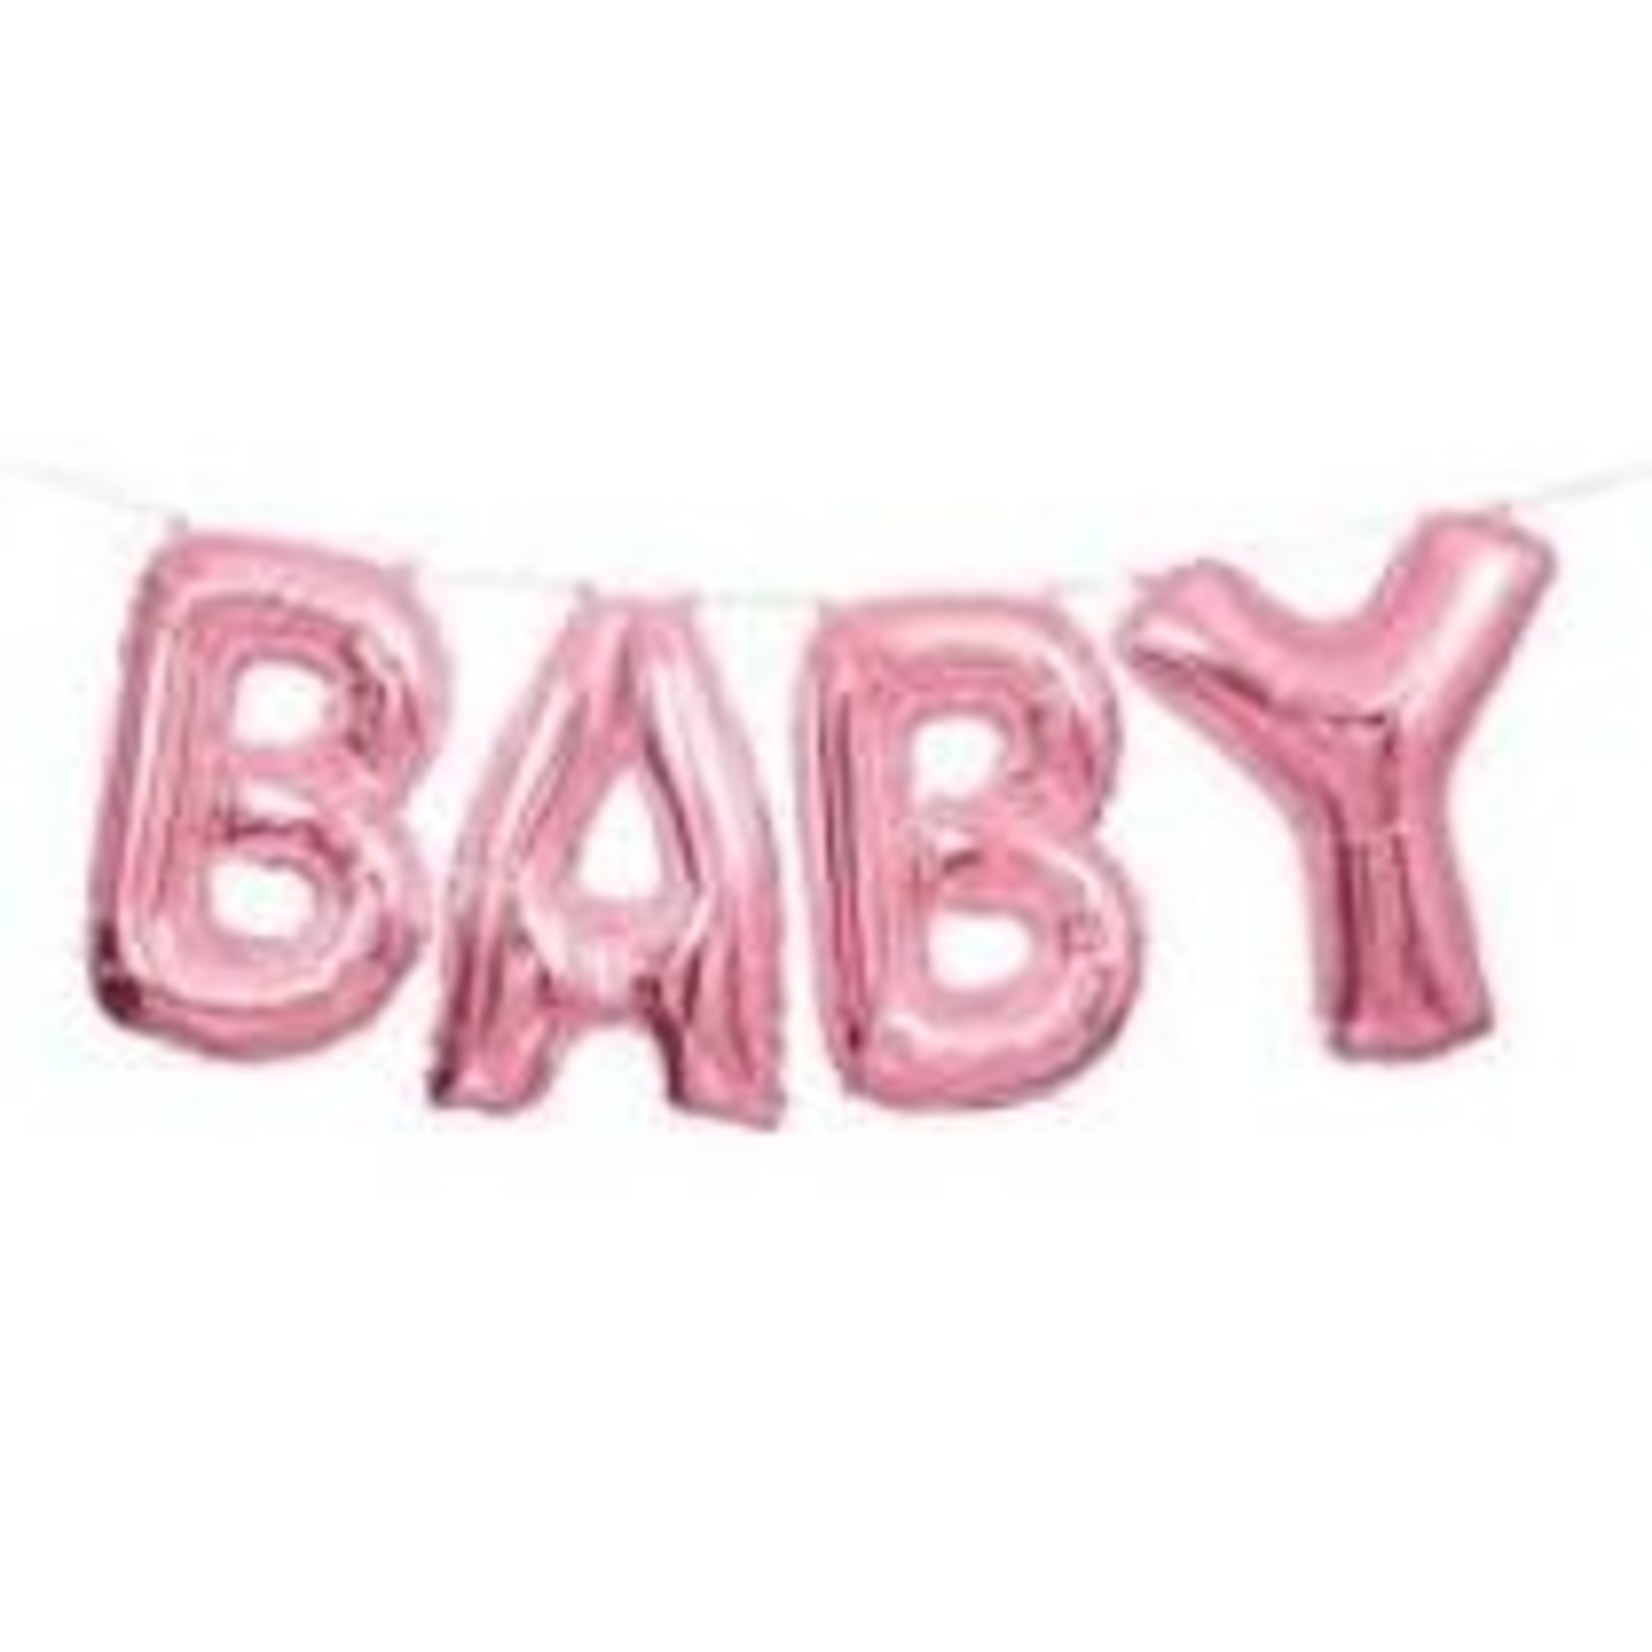 14" 'Baby' Balloon Banner Kit Pink